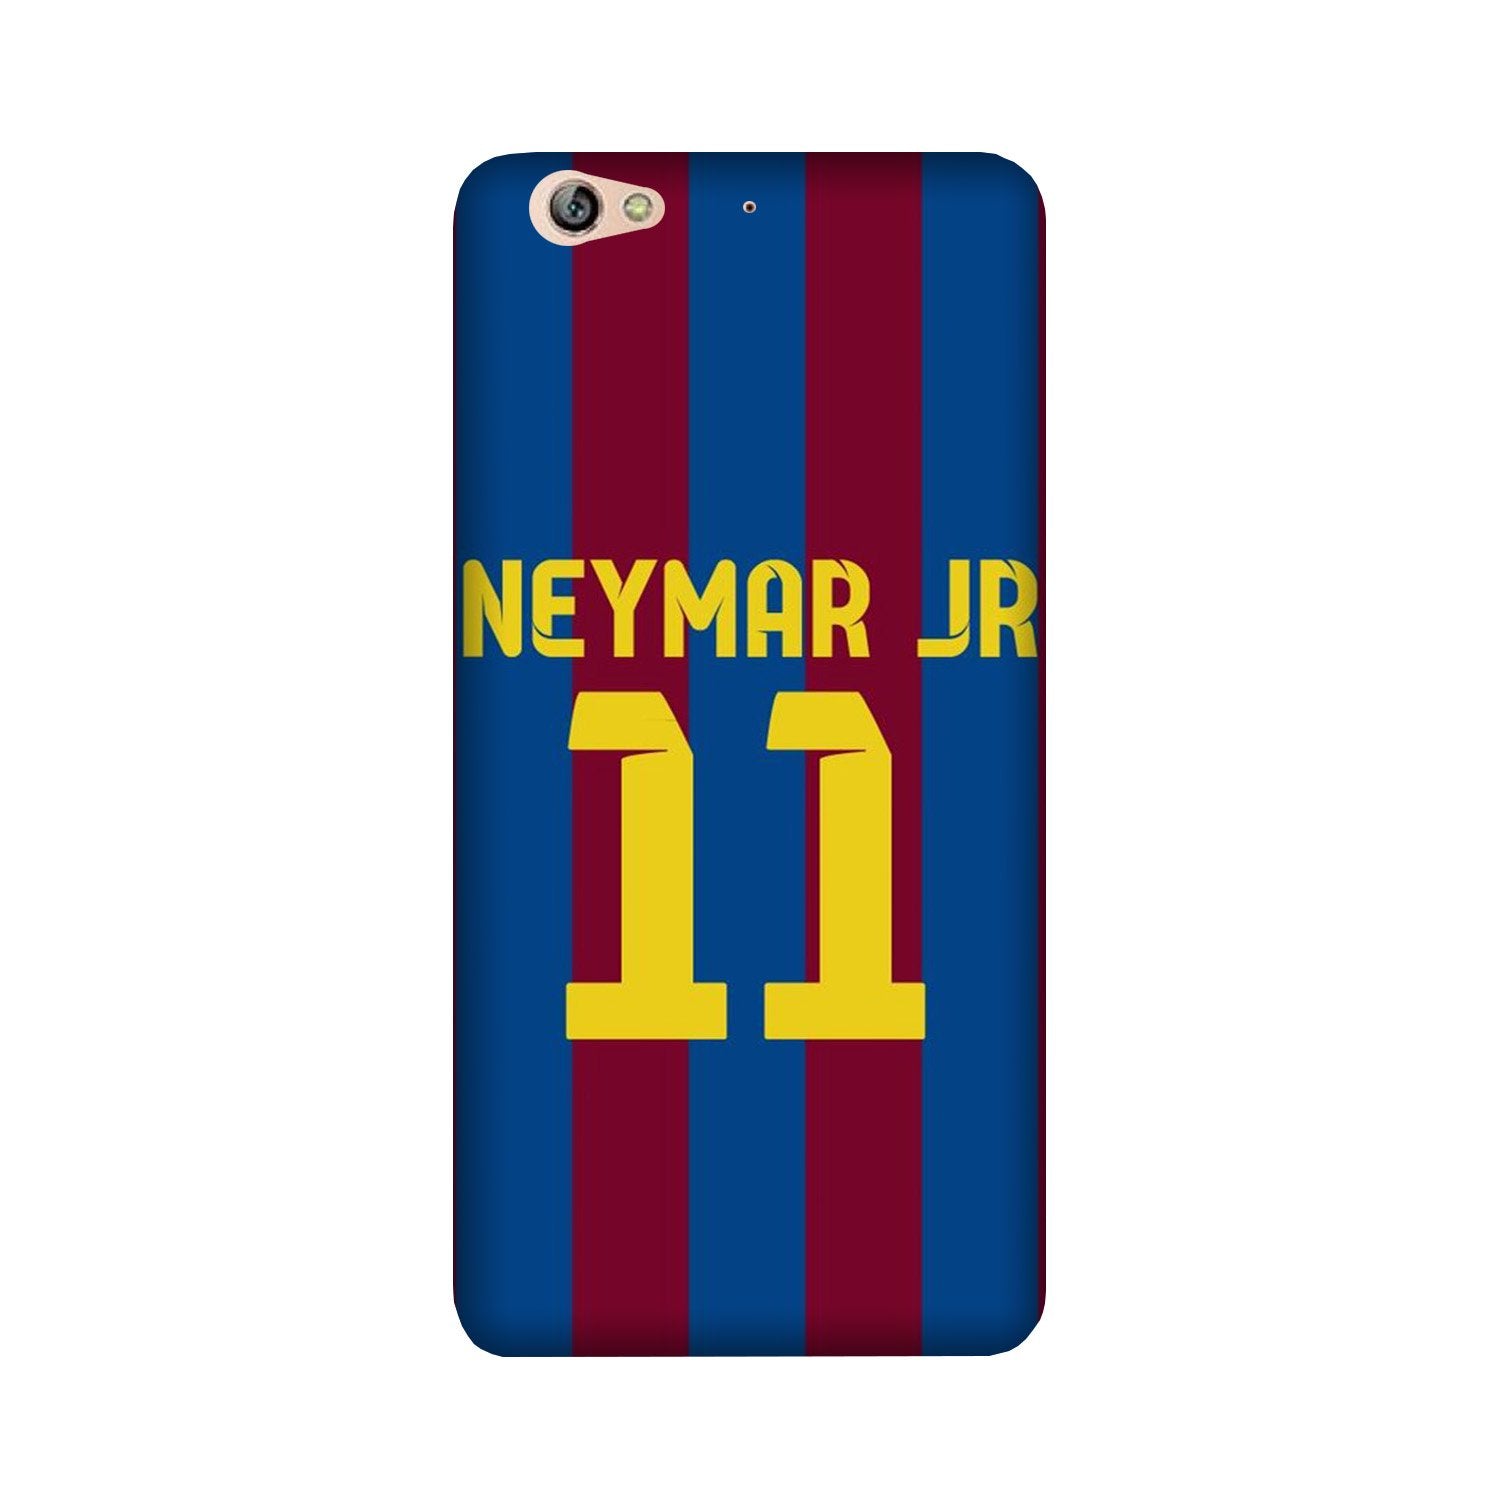 Neymar Jr Case for Gionee S6  (Design - 162)